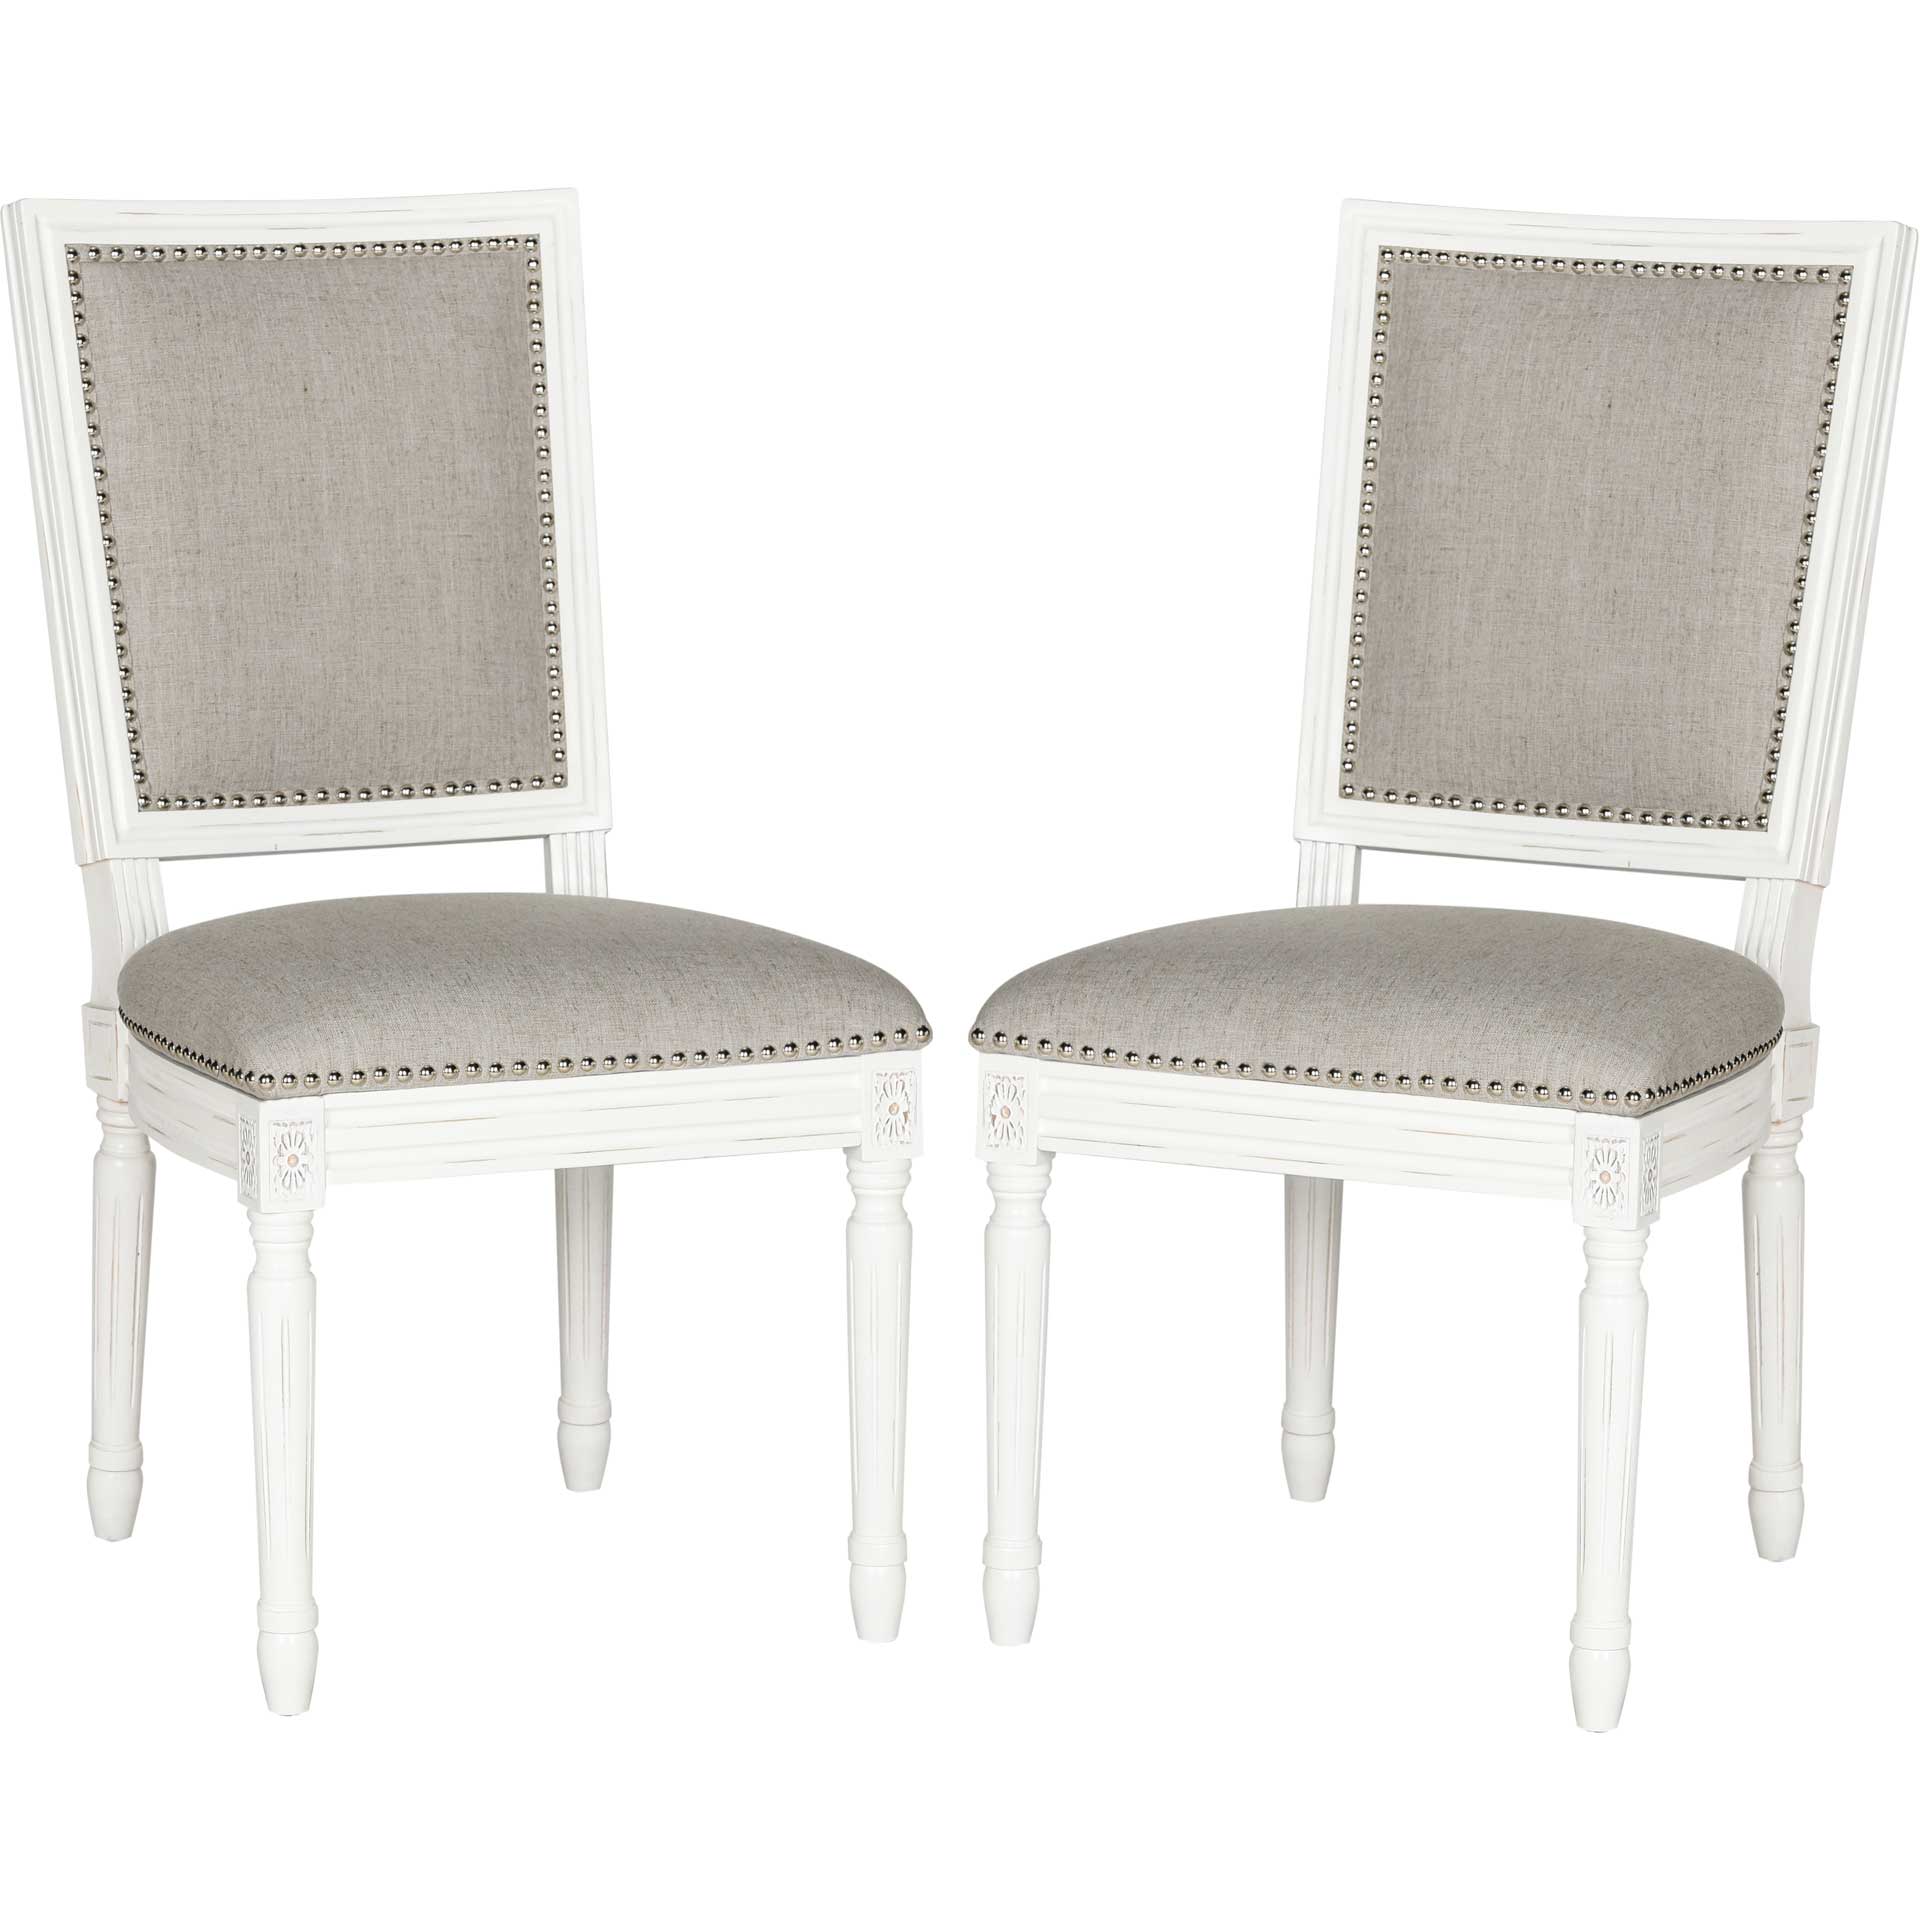 Burst Linen Side Chair Light Gray/Cream (Set of 2)